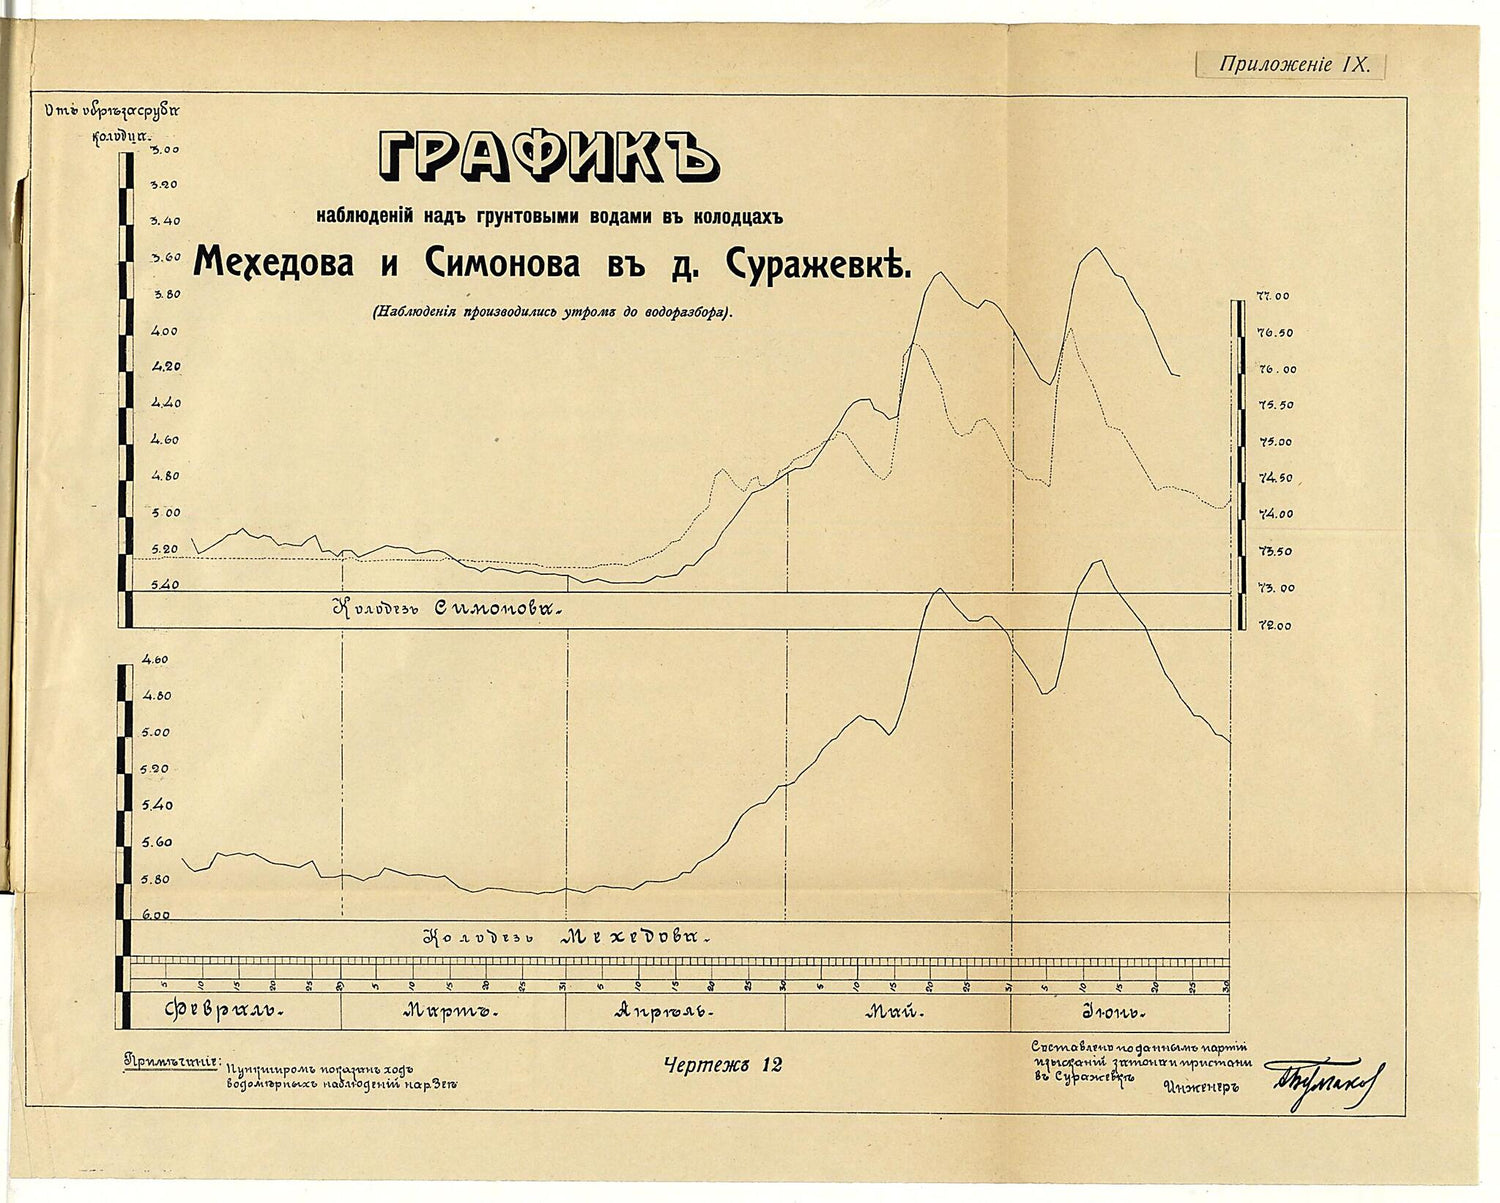 This old map of Grafik Nabli︠u︡deniĭ Nad Gruntovymi Vodami V Kolodt︠s︡akh Mekhedova I Simonova V D.Surazhevke (nabli︠u︡denii︠a︡ Proizvodilis&